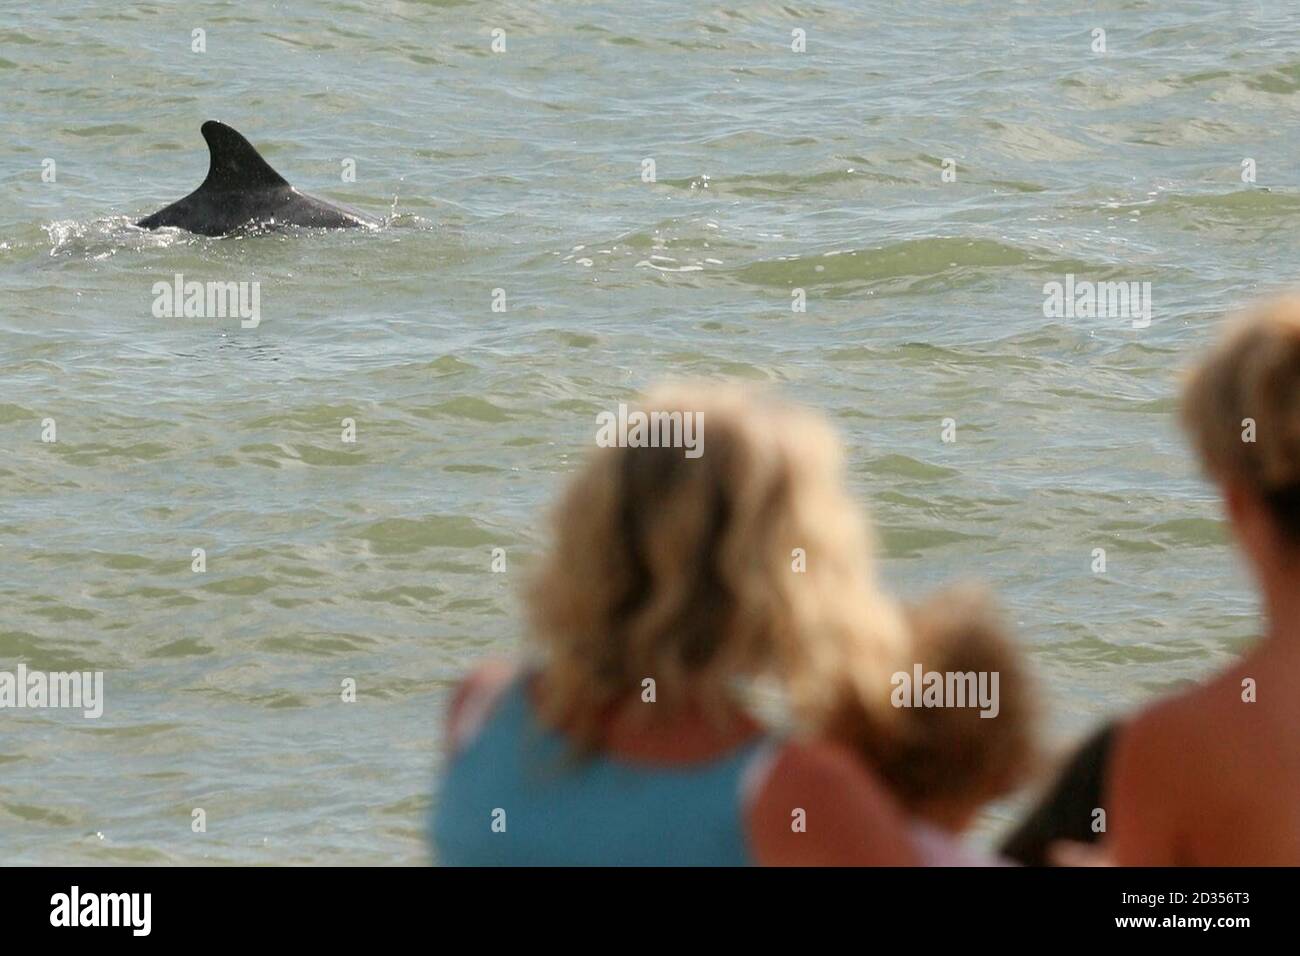 Les touristes regardent 'Dave' le dauphin nager dans la mer près de Sandgate dans le Kent. Banque D'Images